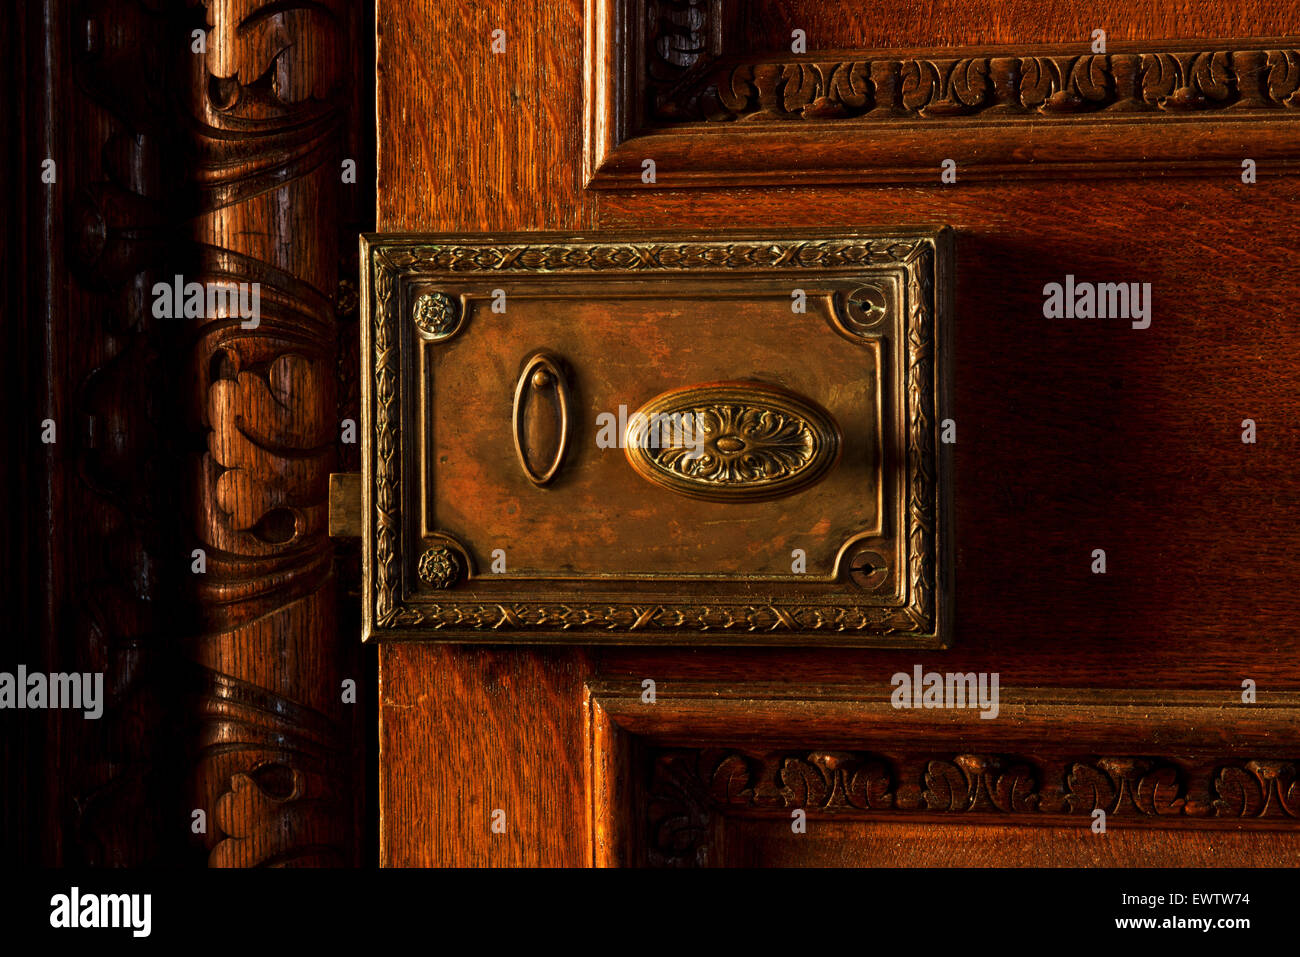 Des détails sur un bouton de porte en orphelinat Silverlands, Chertsey, Surrey, UK Banque D'Images